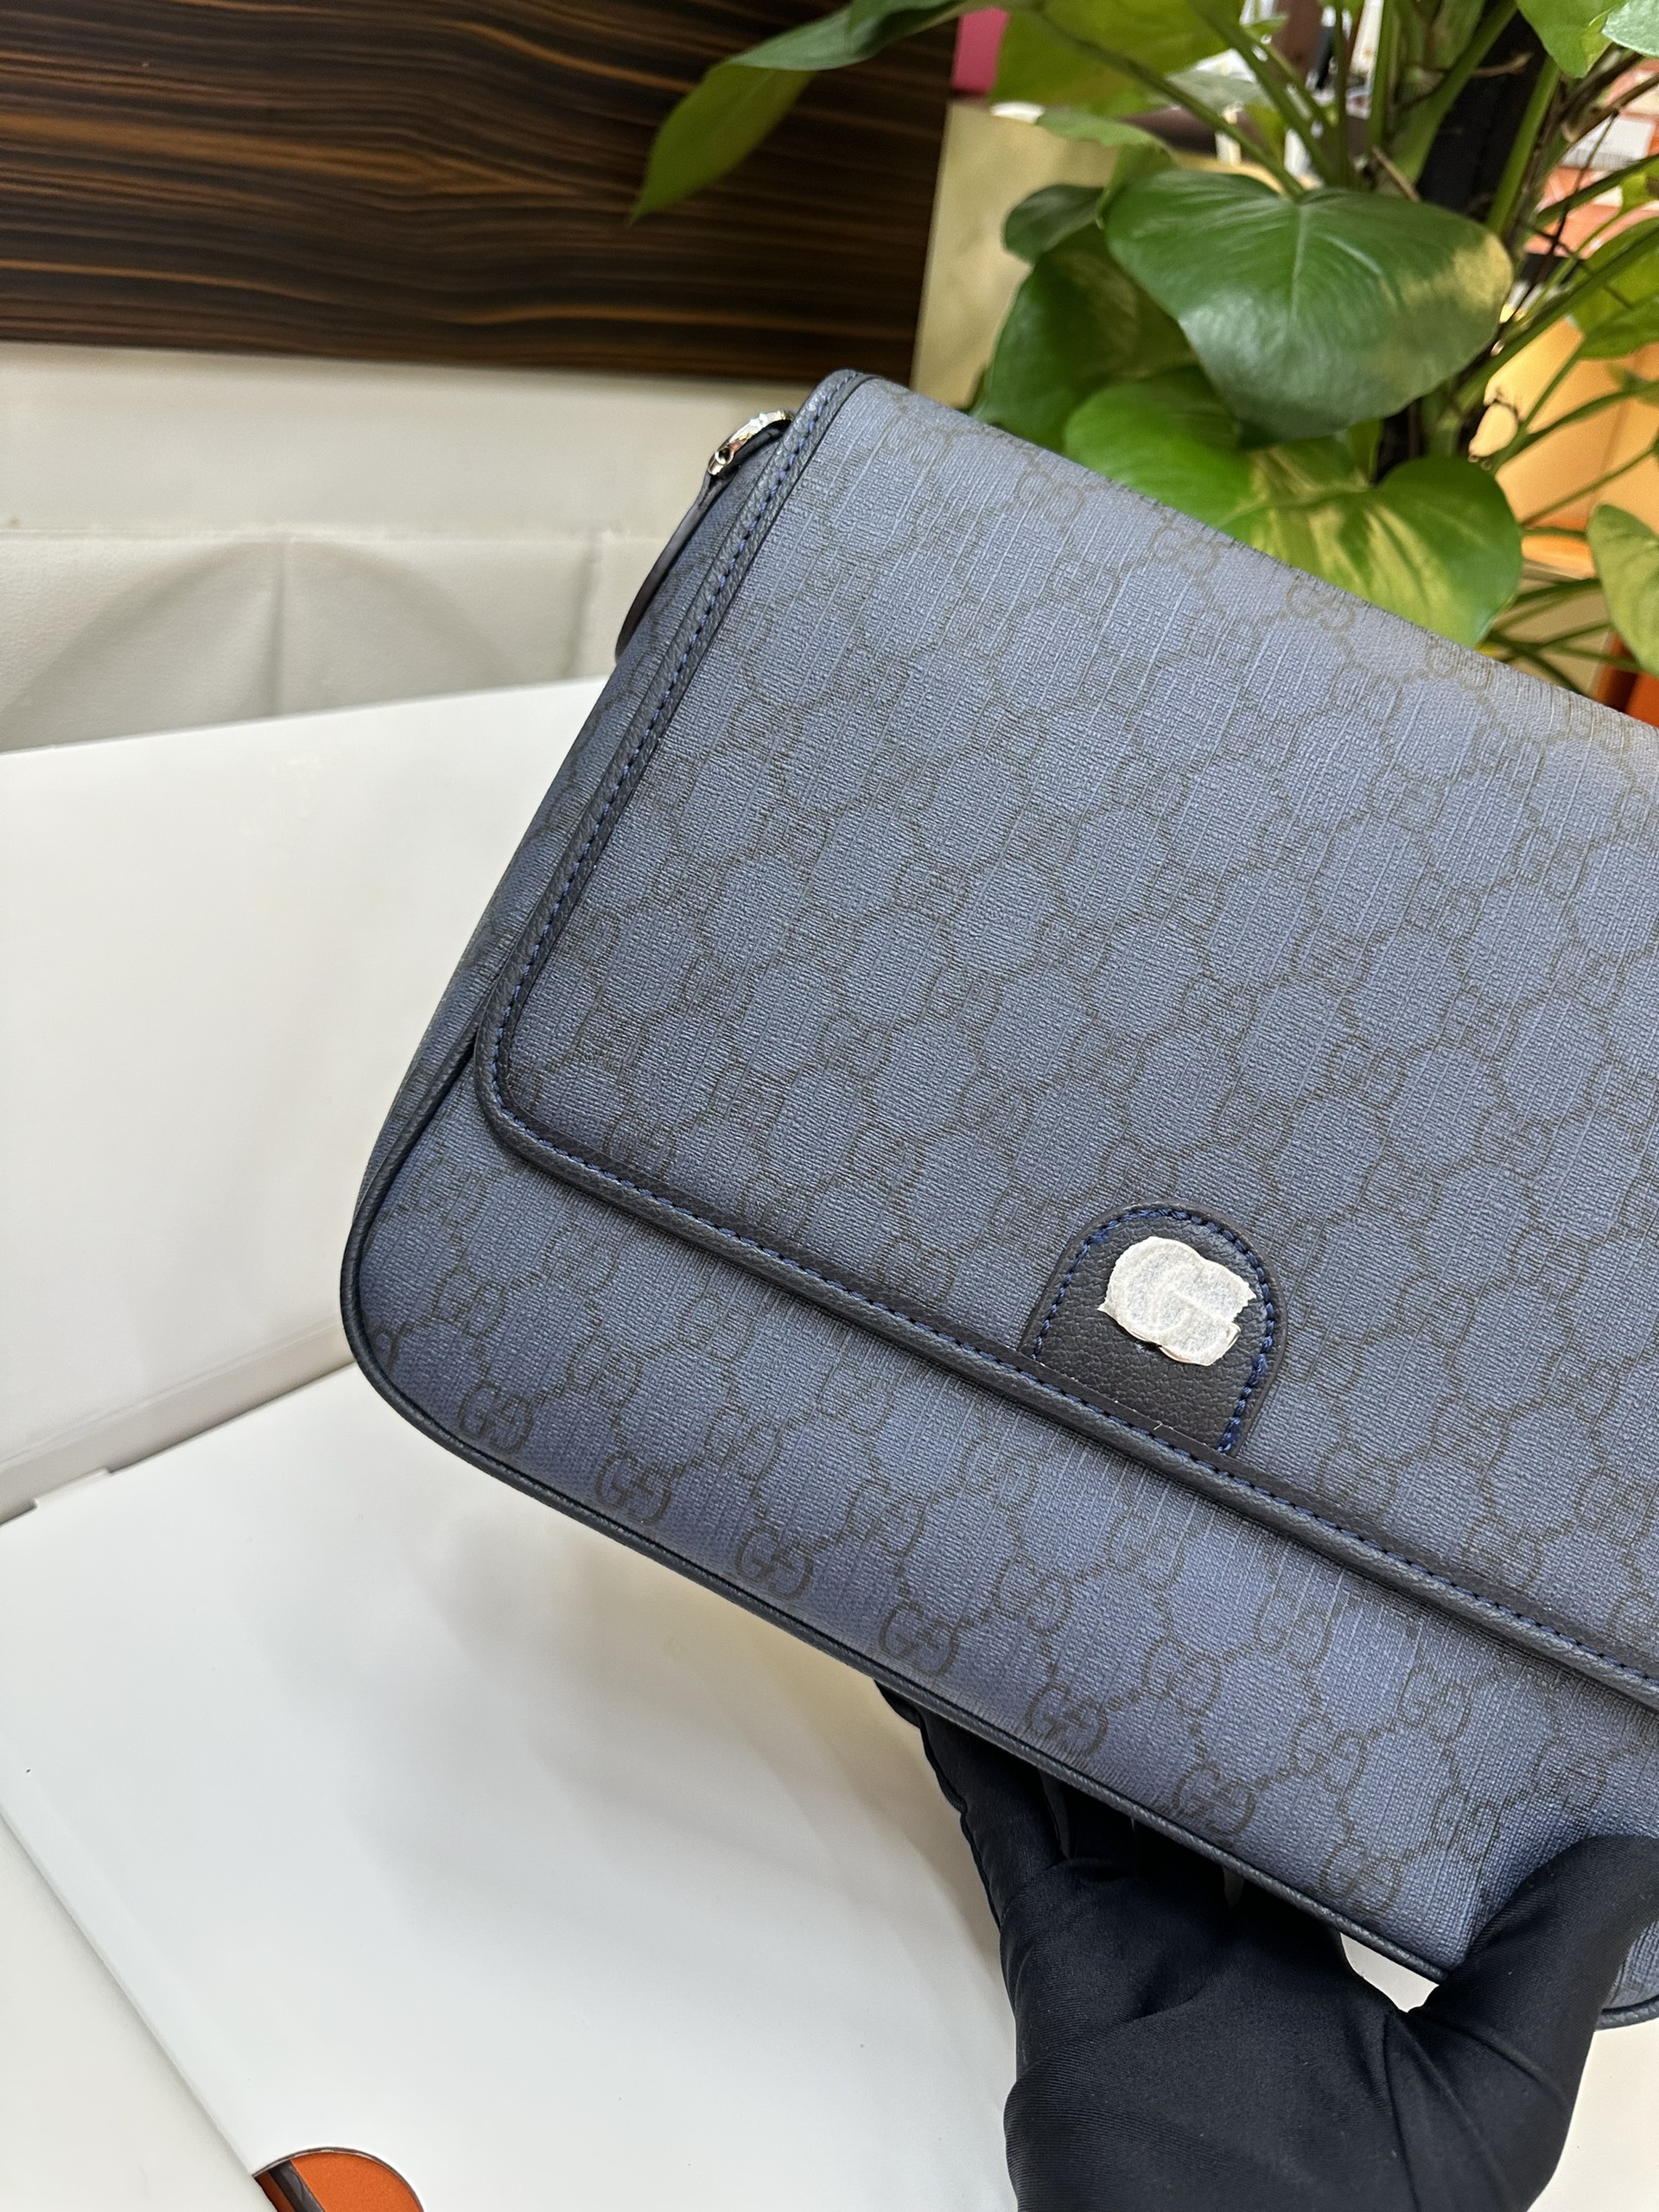 Túi Gucci Ophidia Medium Messenger Bag Màu Xanh Size 28cm Chưa Kèm Box